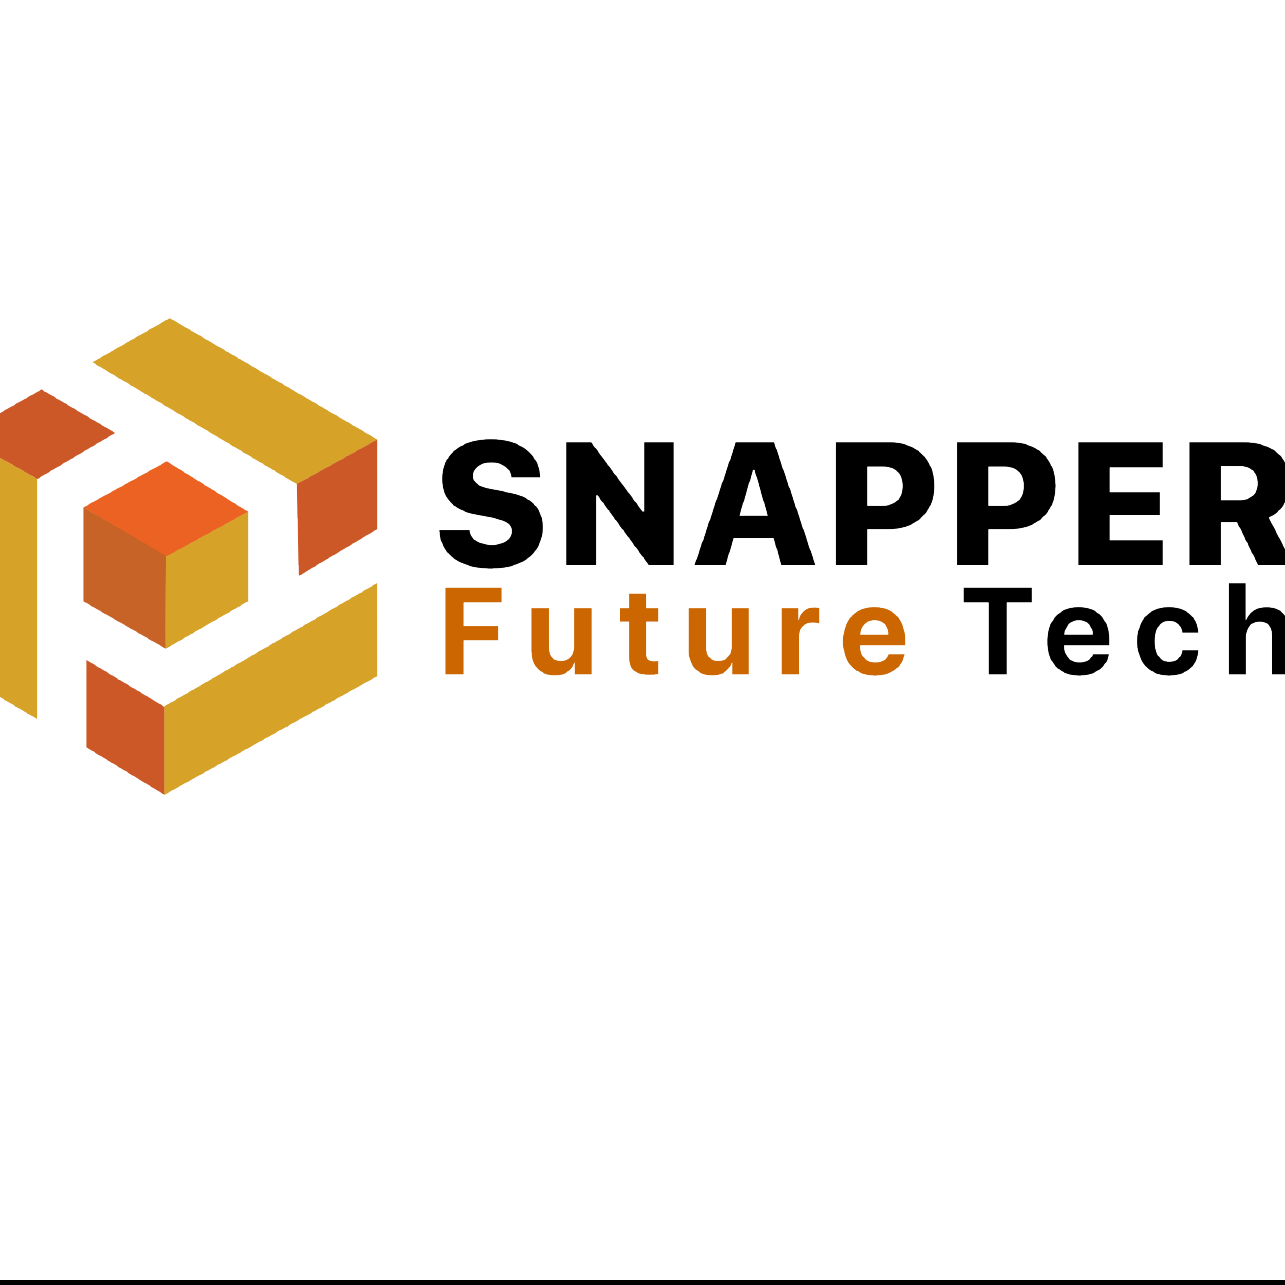  Snapper Future  Tech